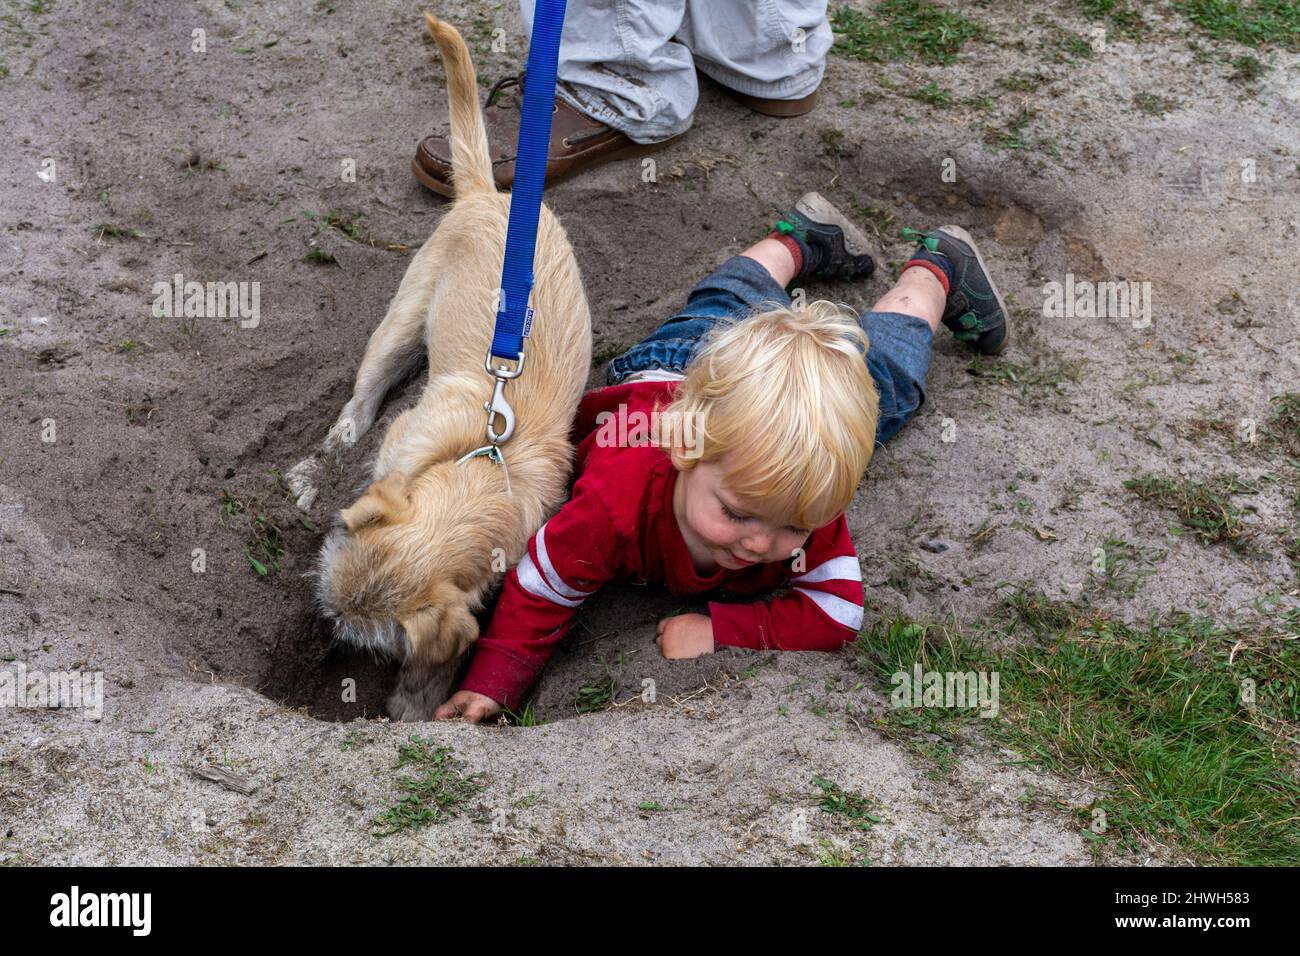 Los niños pequeños juegan en la suciedad con un perro mascota, cavando un agujero. Concepto de niños jugando afuera en la naturaleza - una infancia saludable- inmunidad natural. Foto de stock